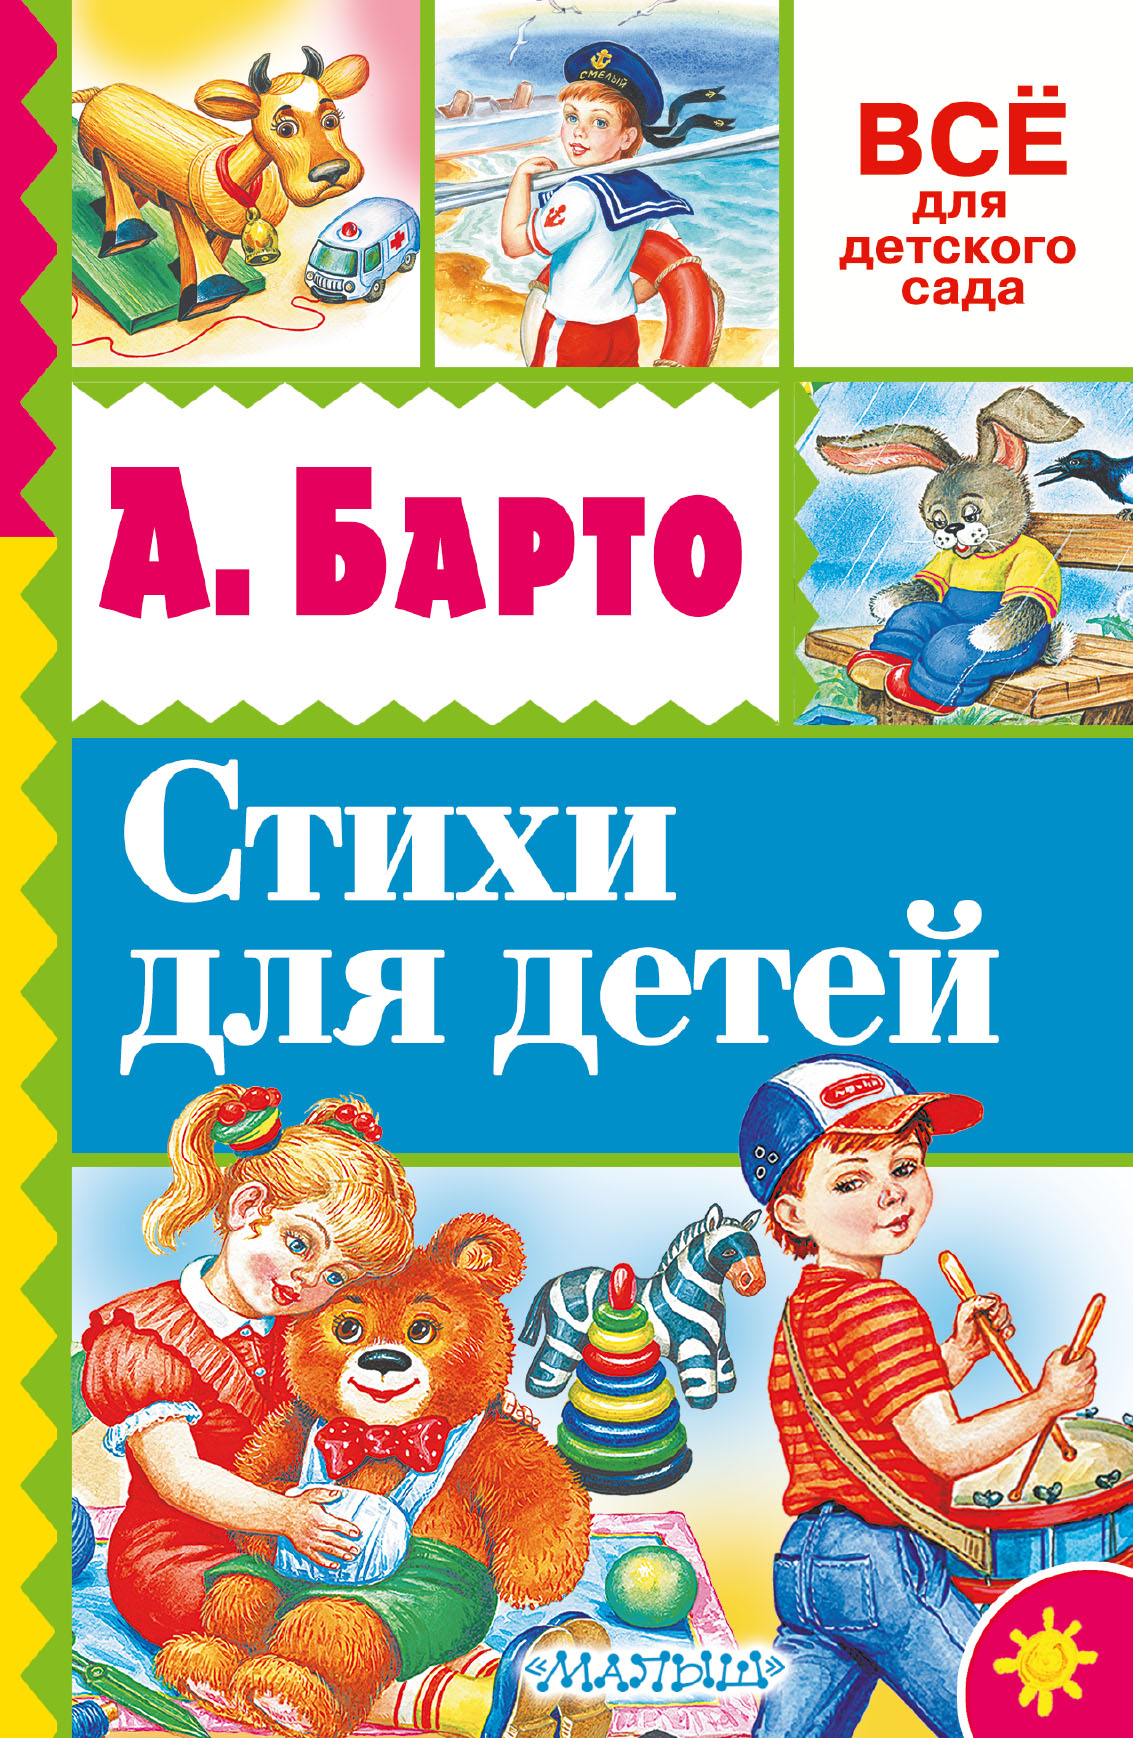 Справочники детских садов